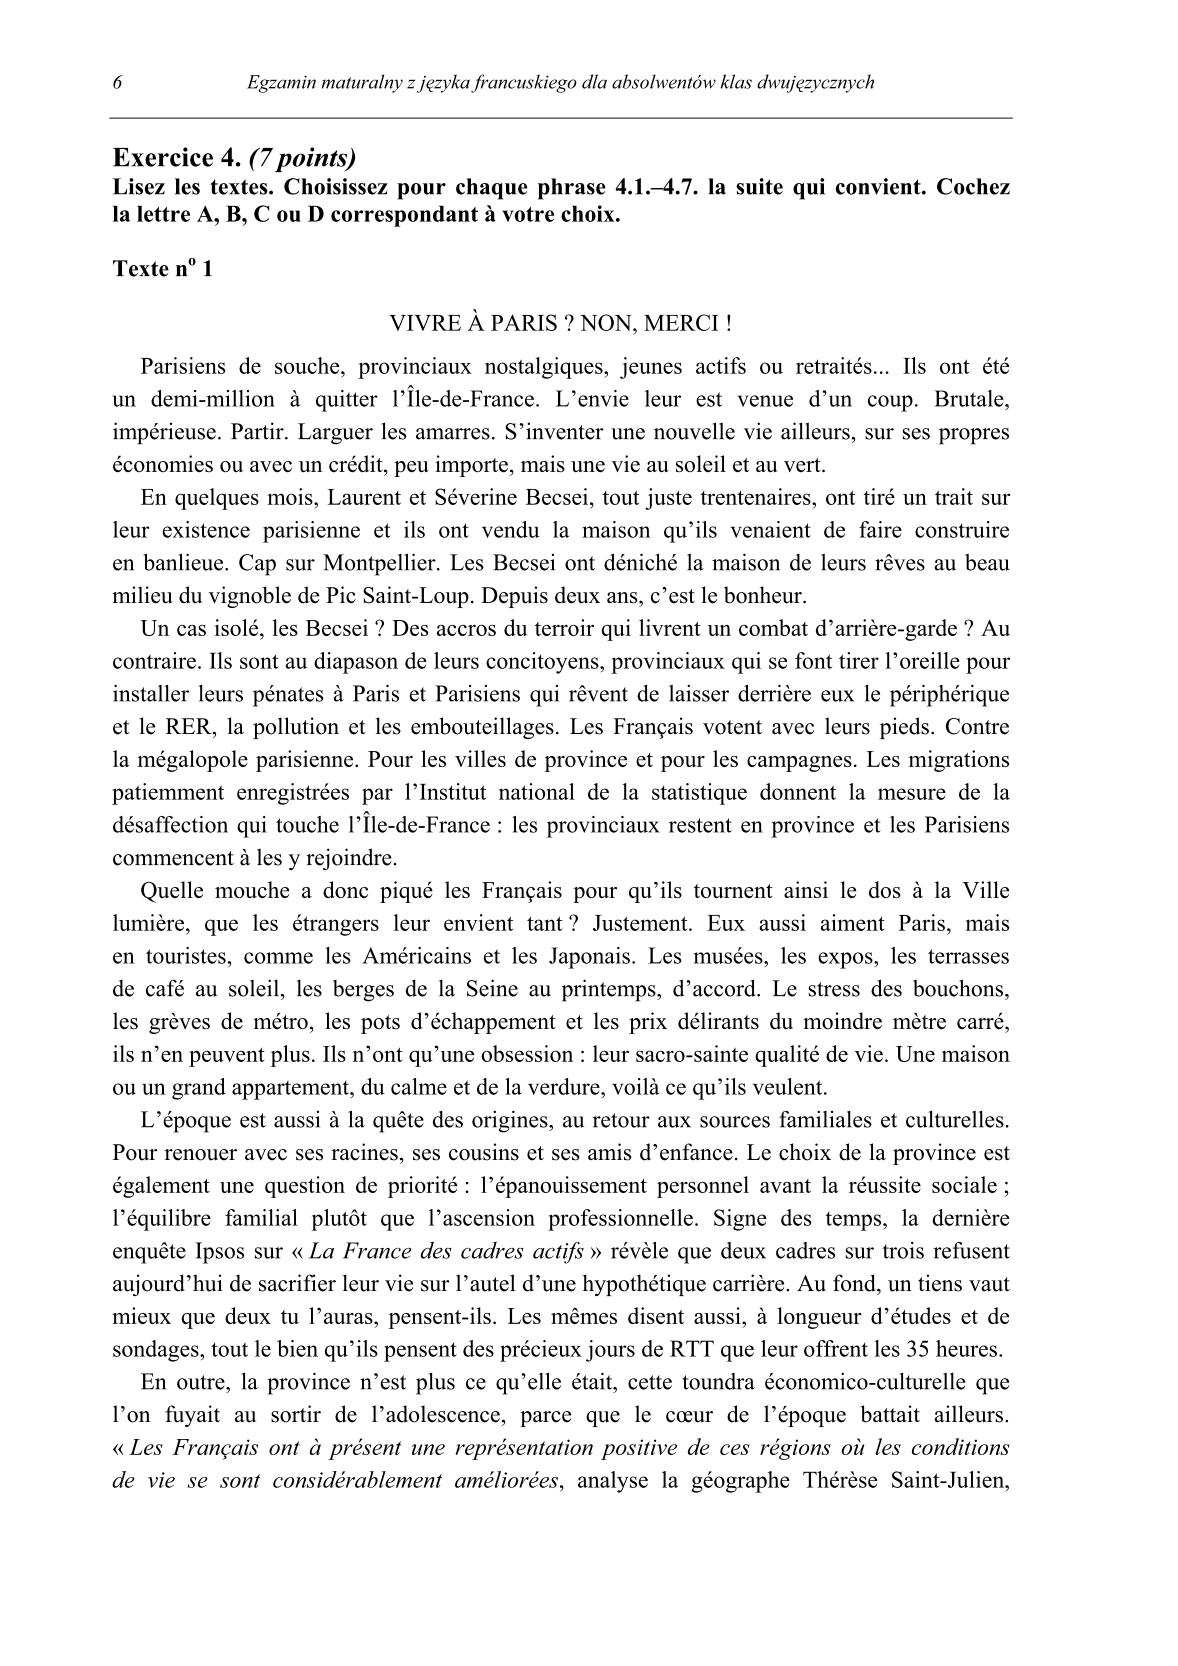 pytania-jezyk-francuski-dla-absolwentow-klas-dwujezycznych-matura-2014-str.6